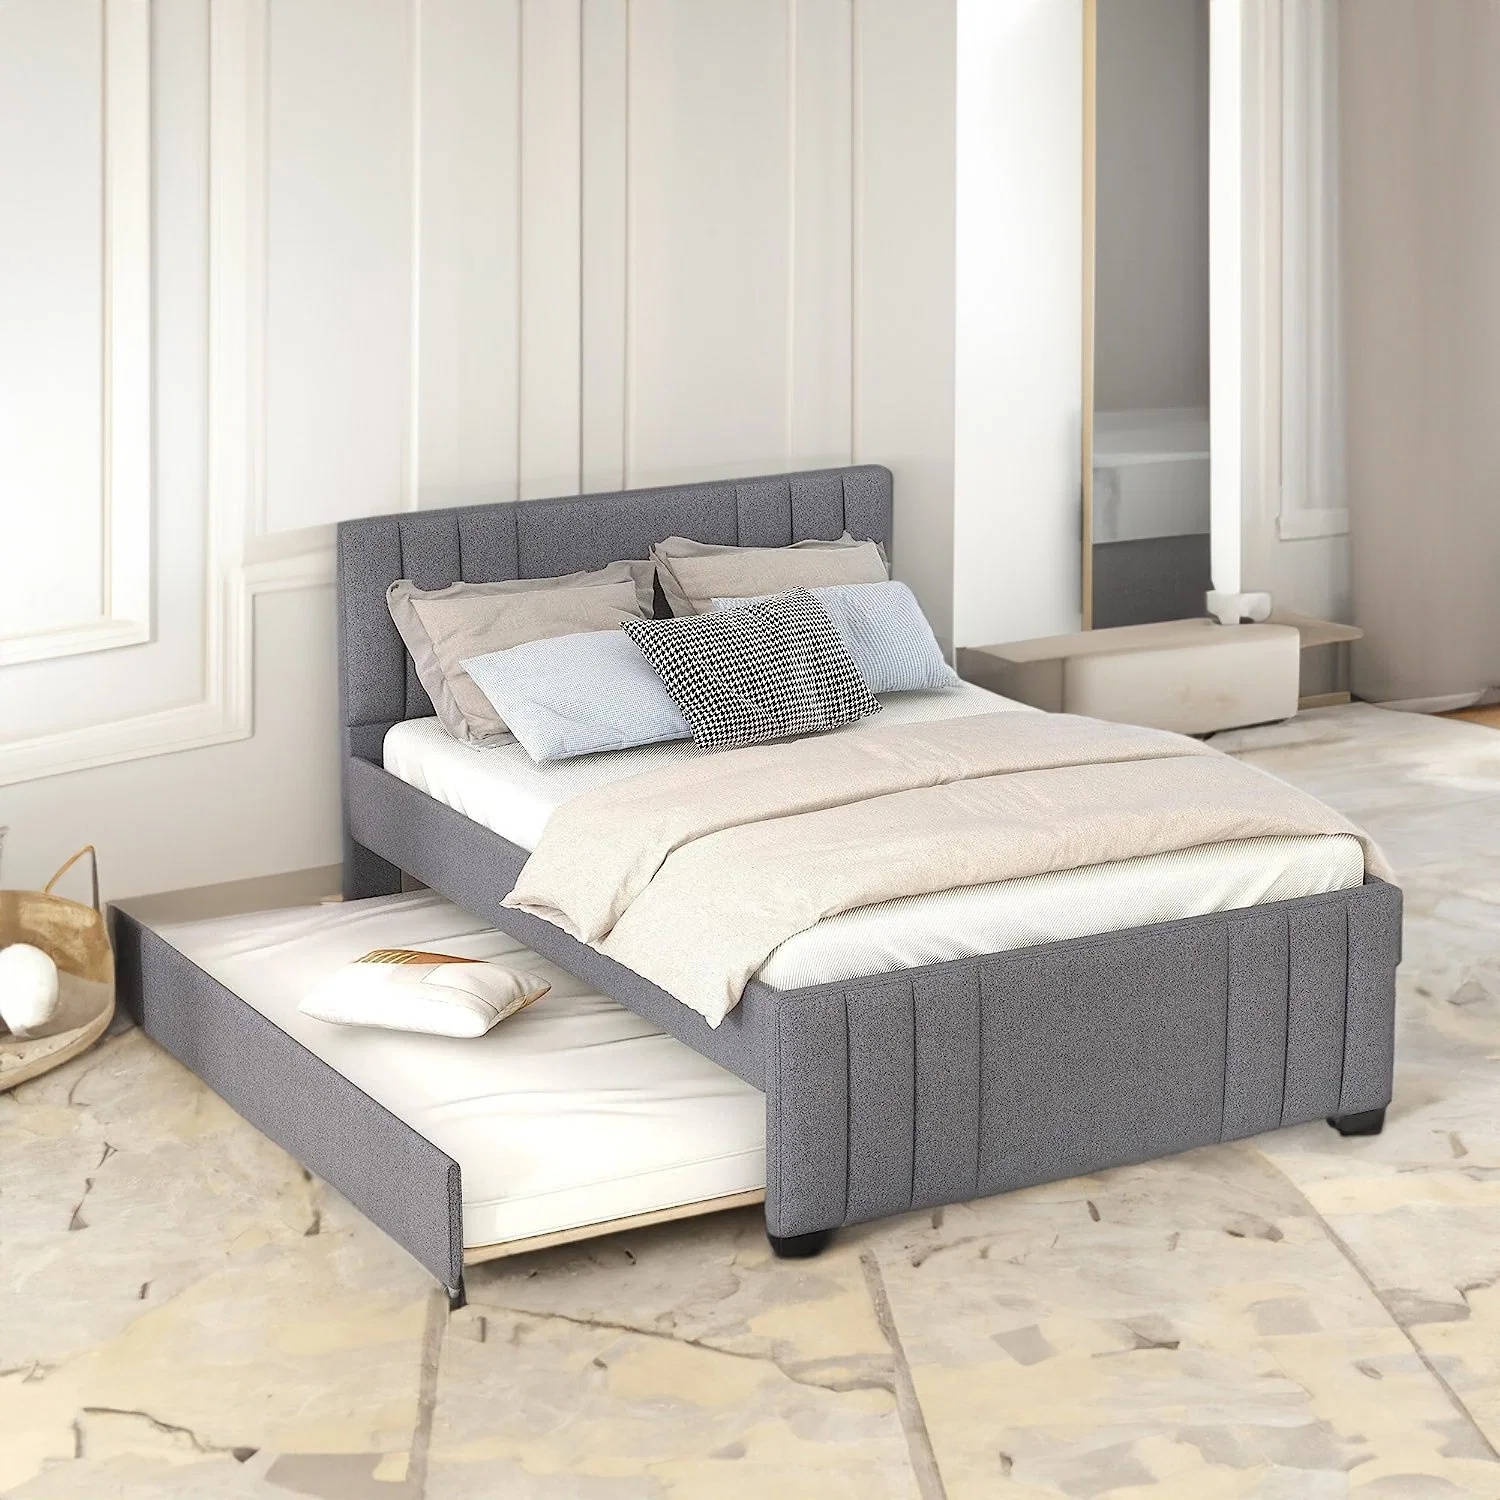 Производство Huayang индивидуальные спальни роскошь размера кинг синтетическая кожа, современные кровать